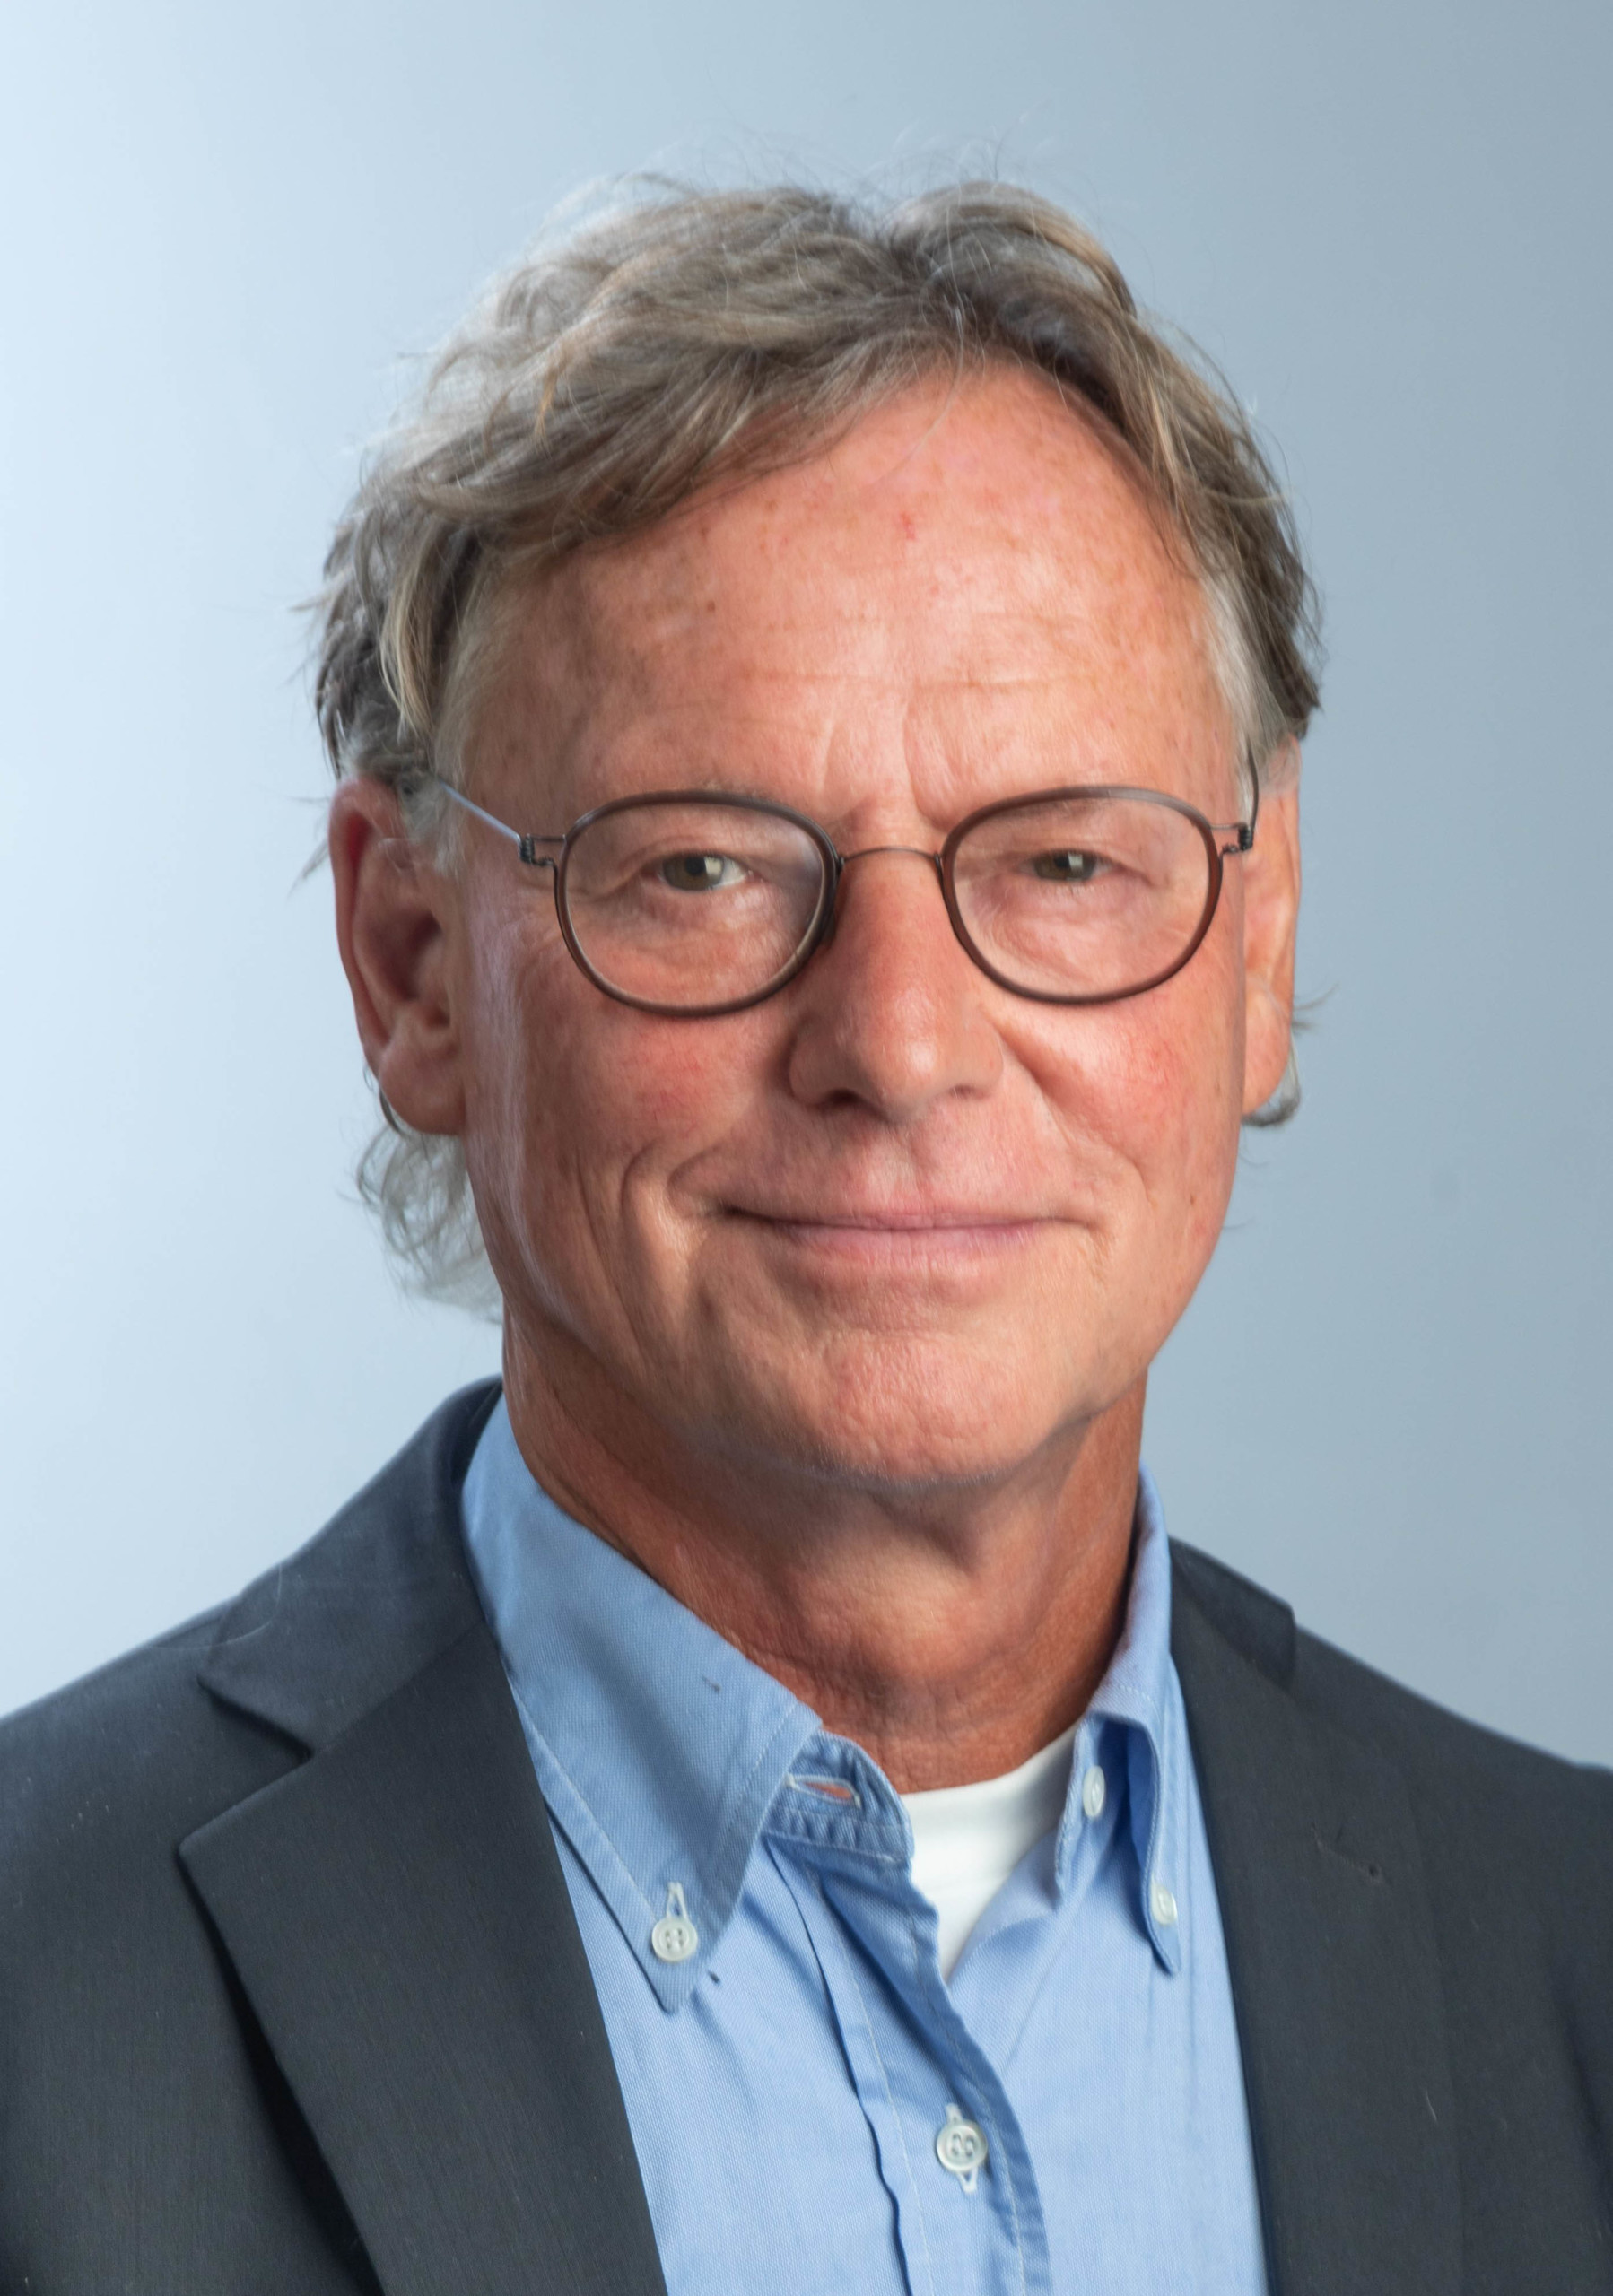 Profilfoto von AMM-Netzwerkpartner Dr. med. Manfred Claussen